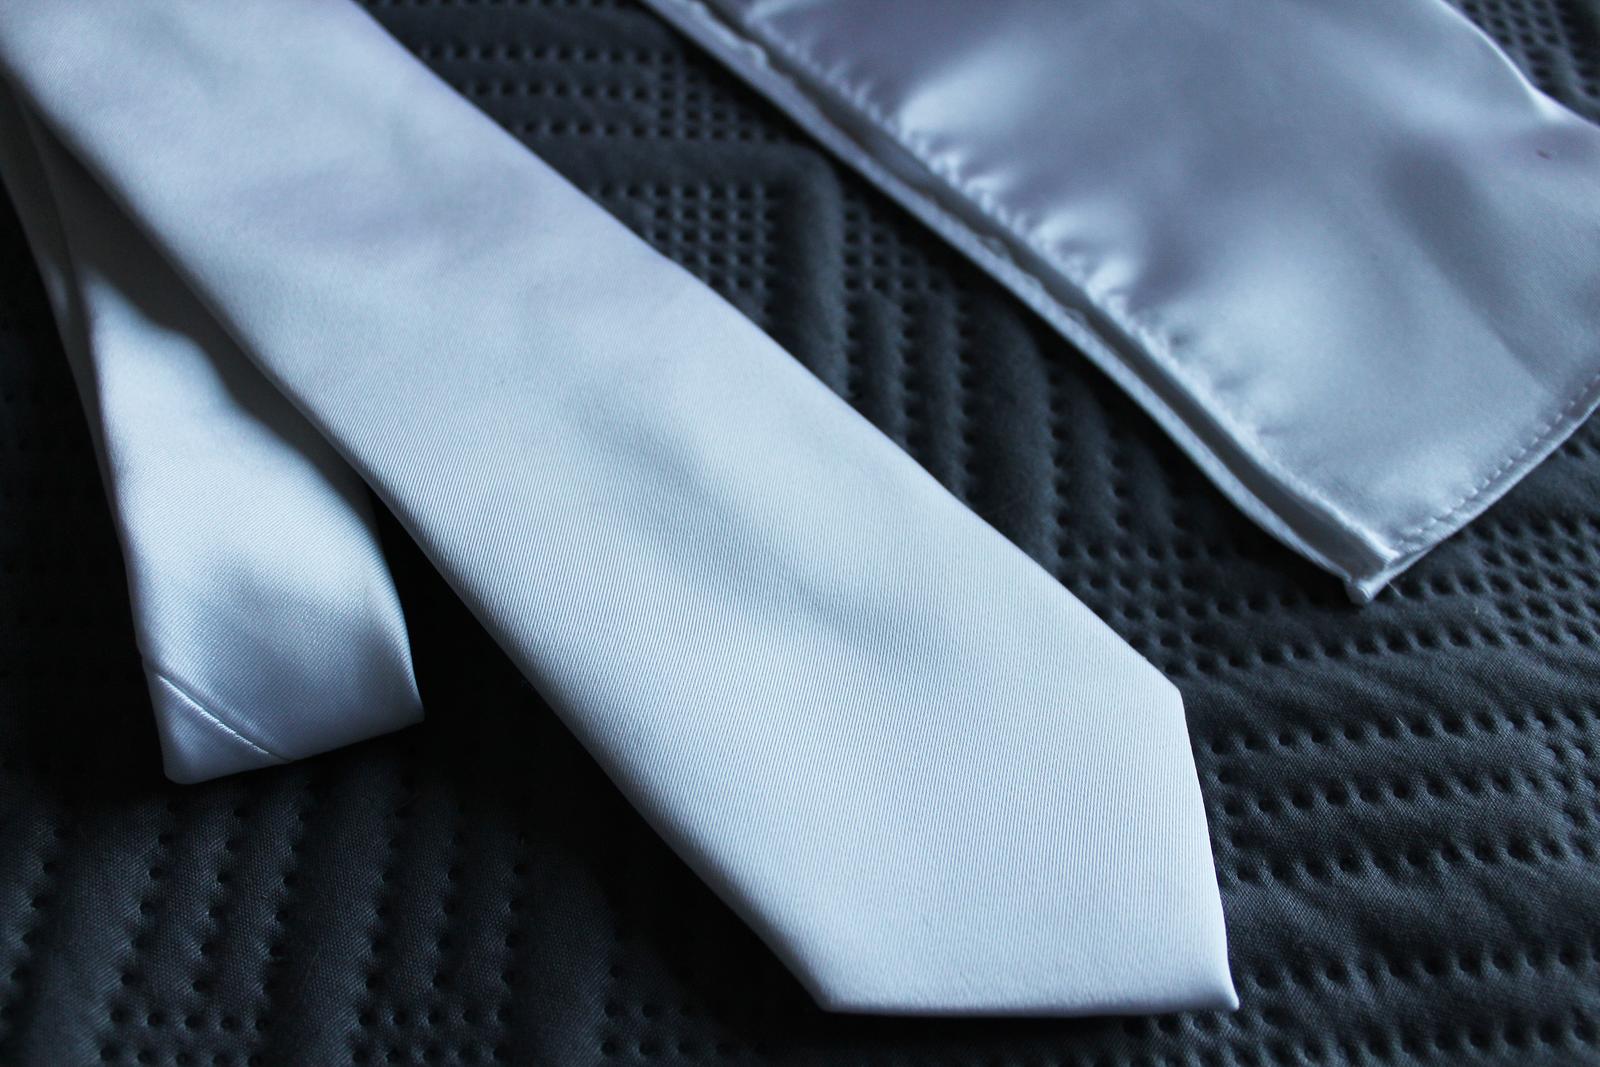 Biela saténová kravata a vreckovka do saka - Obrázok č. 1